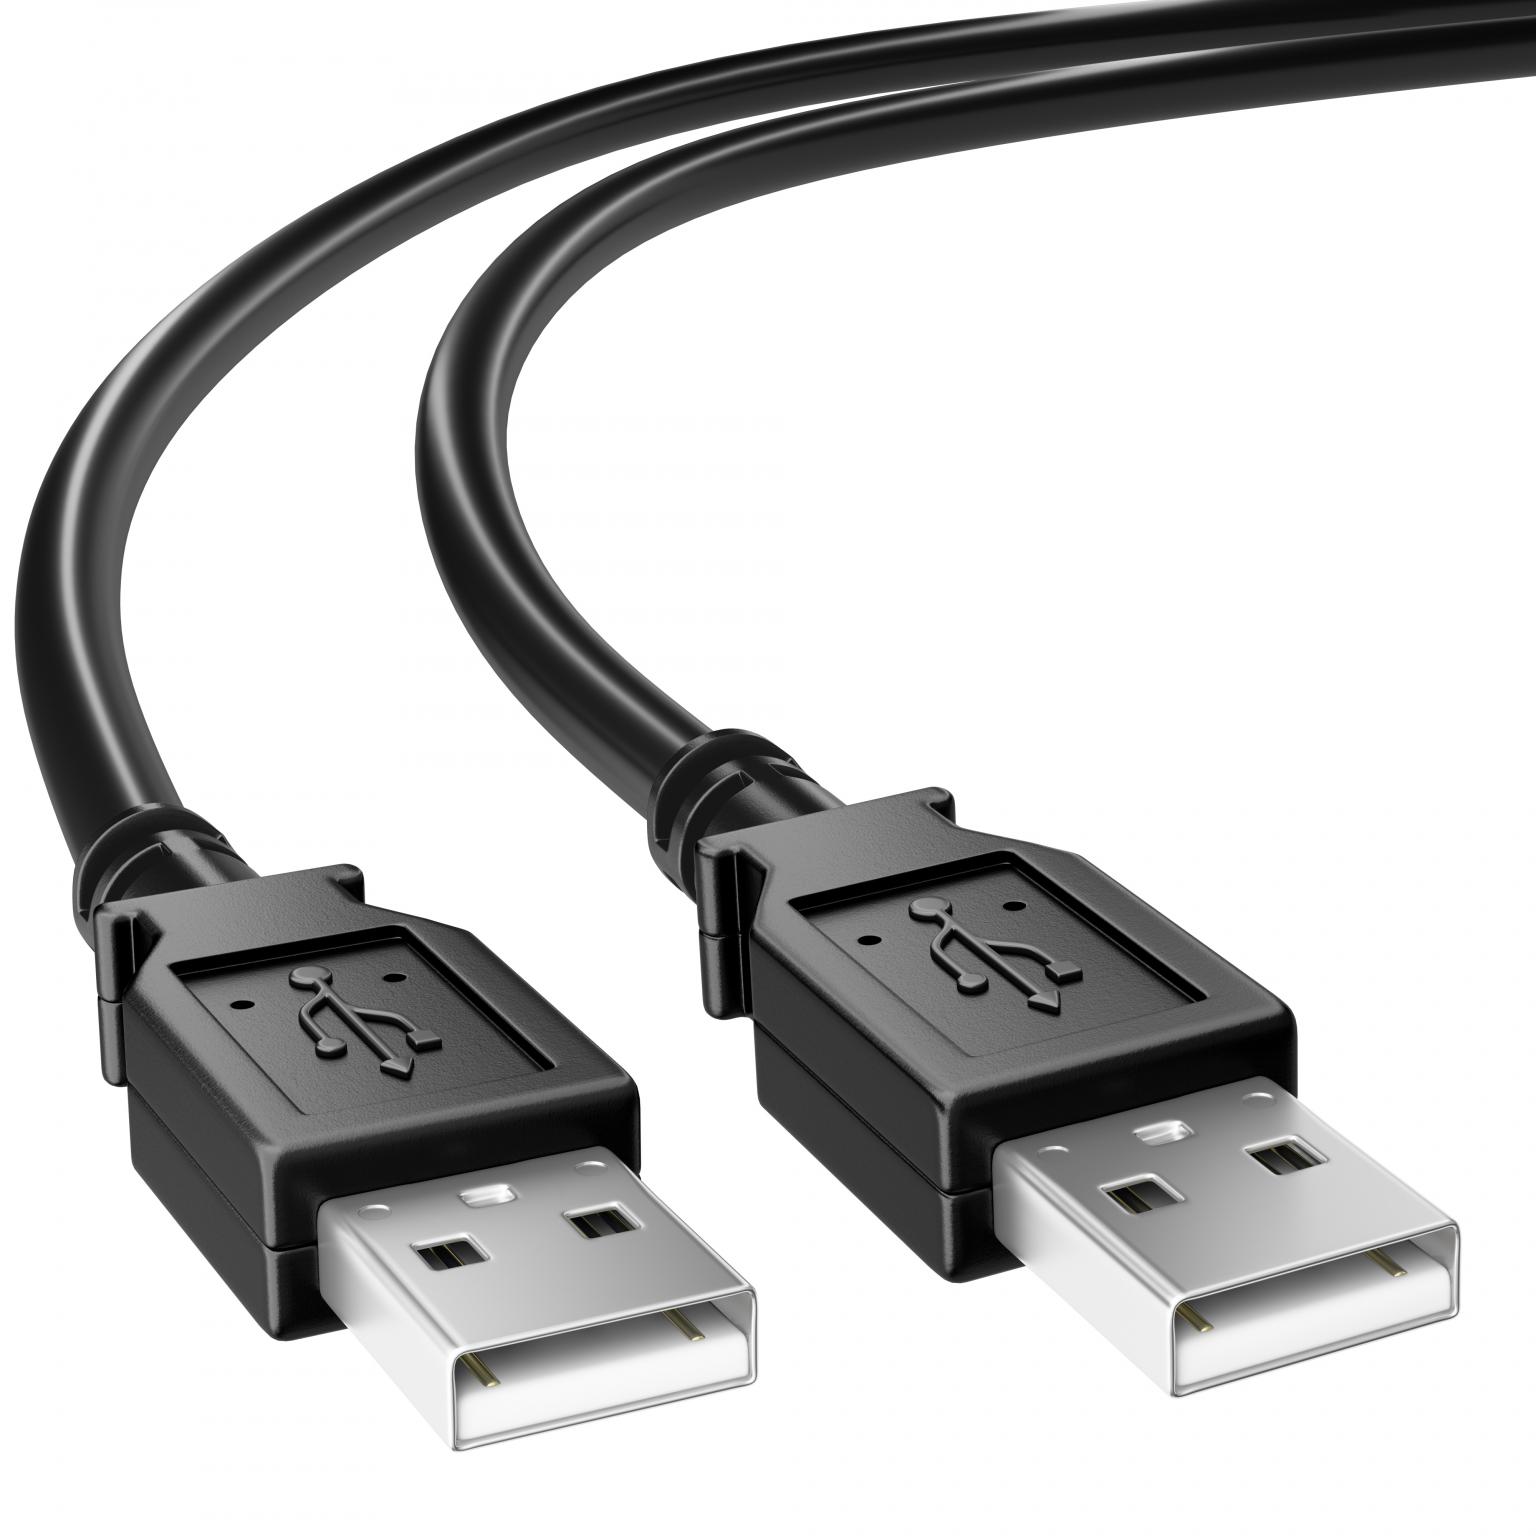 Câble USB-A / USB-B pour imprimante - 1,8m